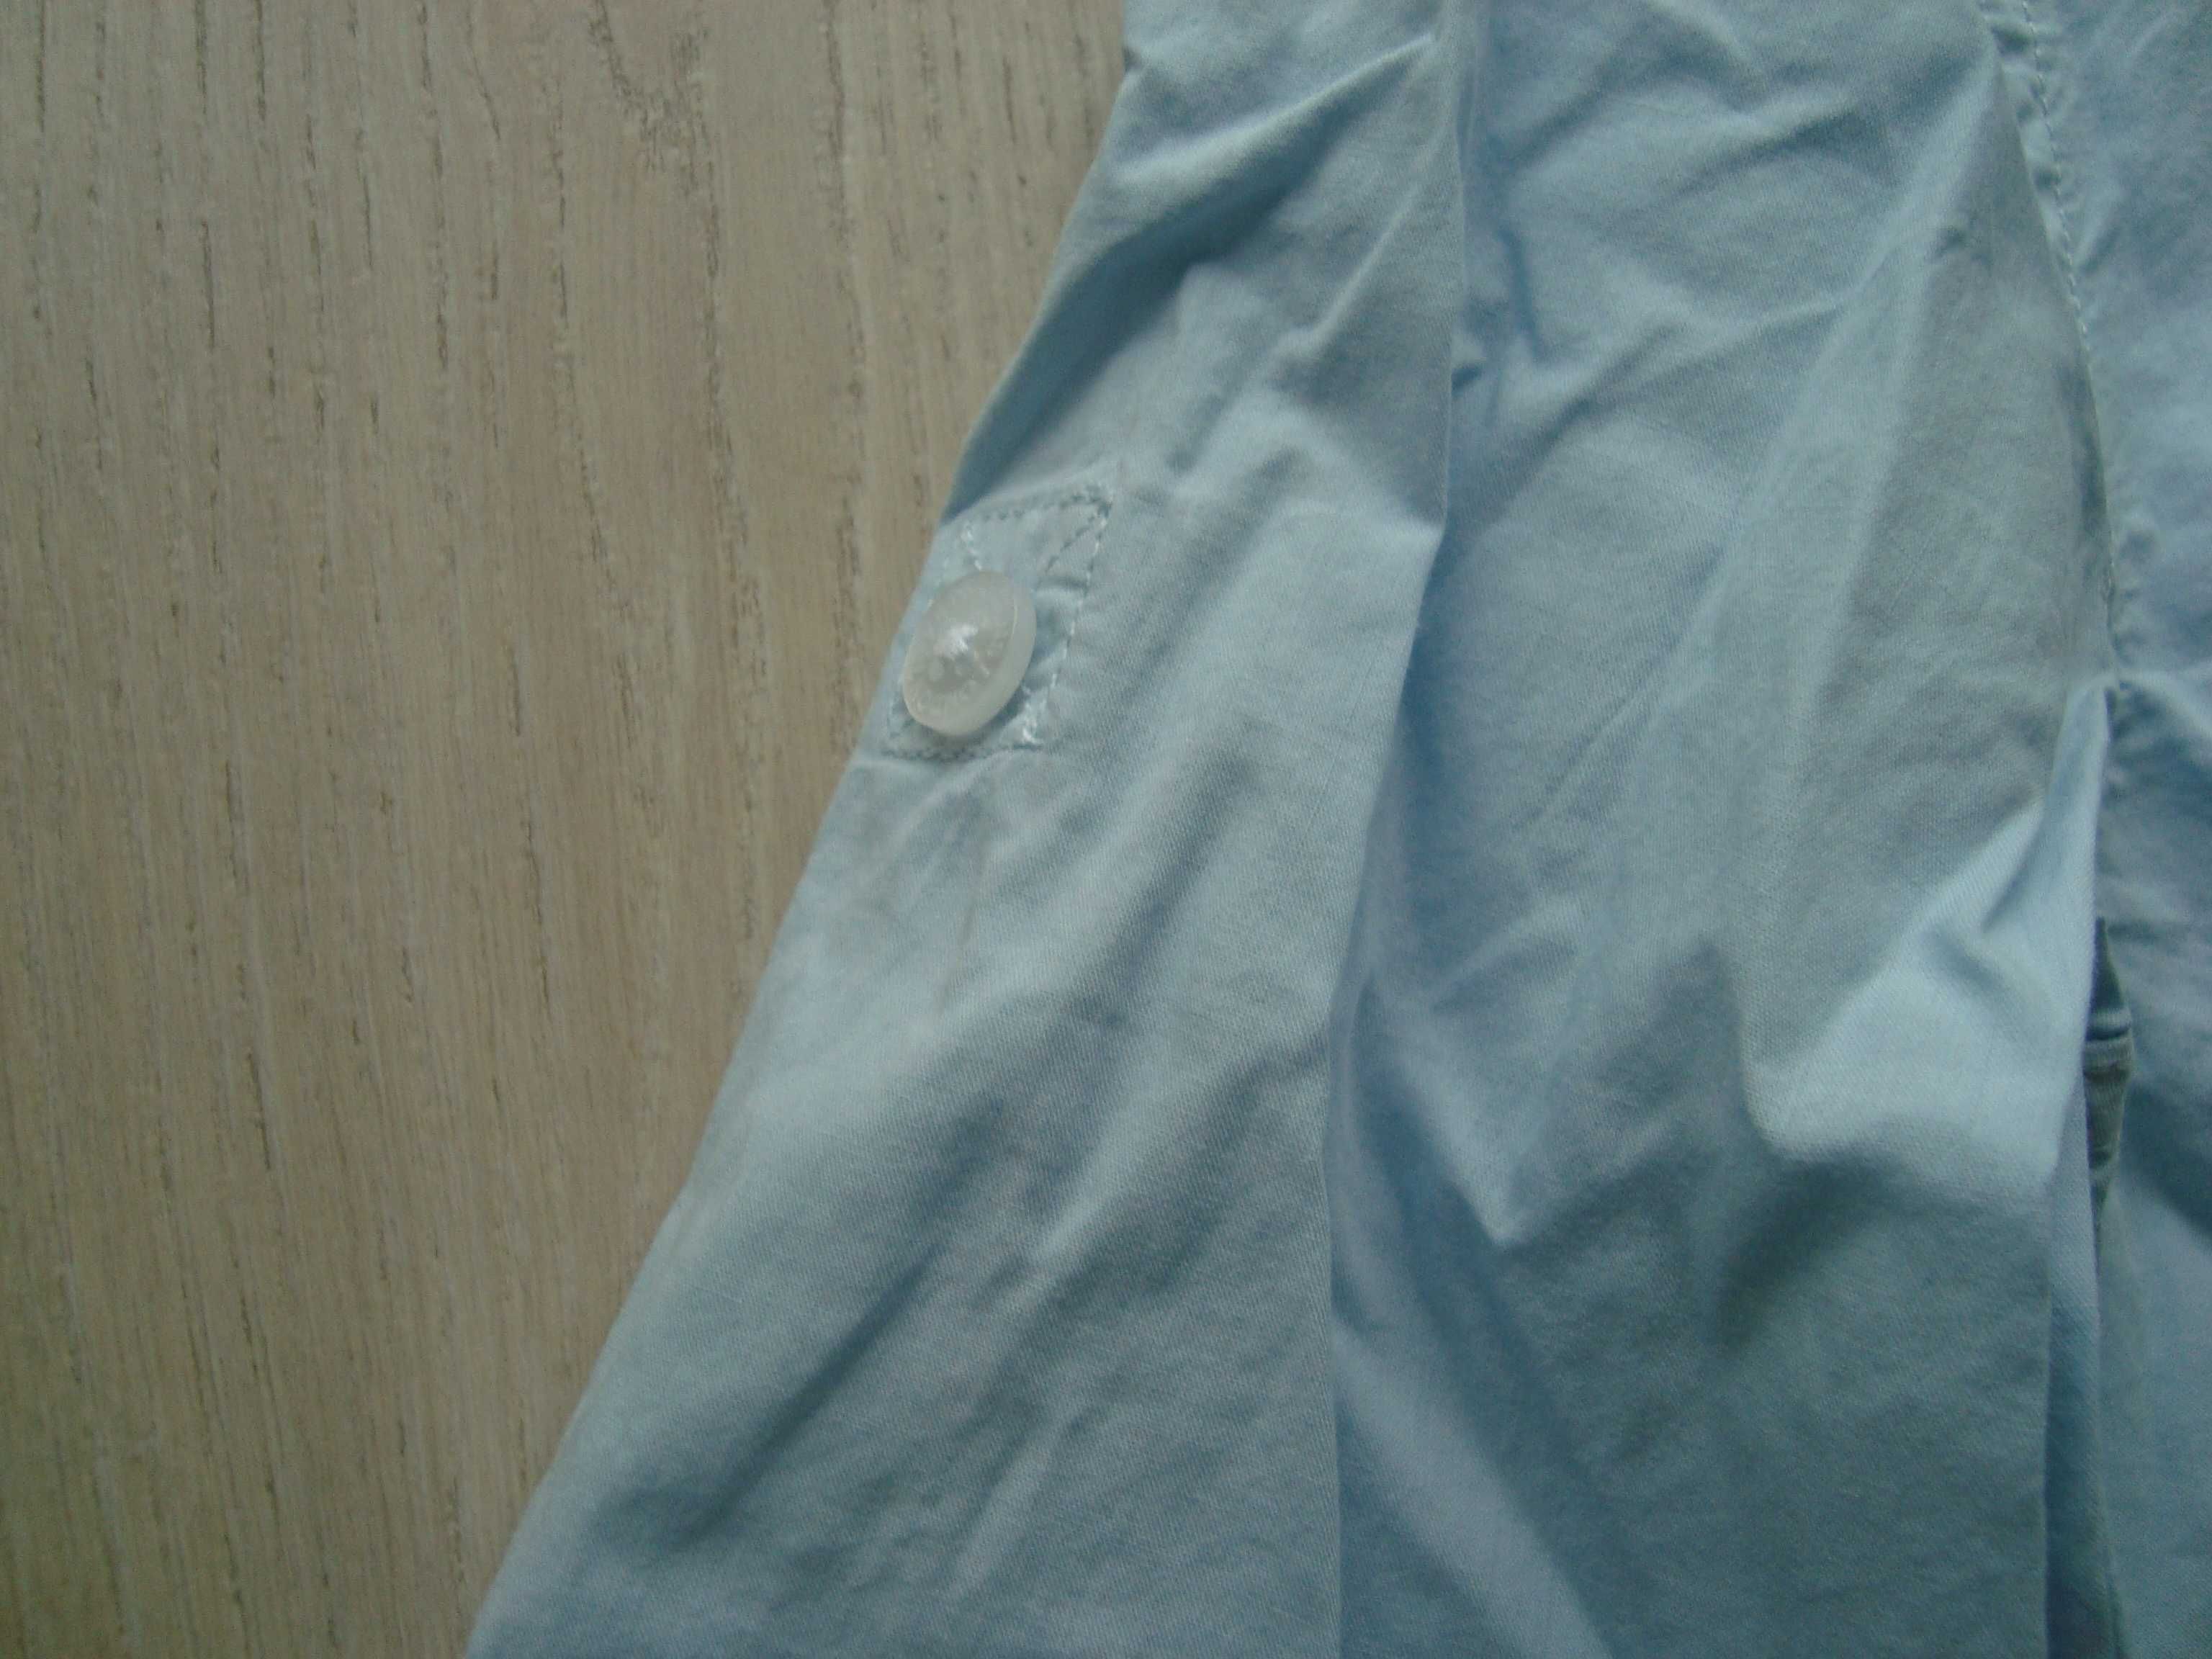 Koszula gładka, niebieska marki Pepe Jeans, nowa, chłopiec 140cm/10lat